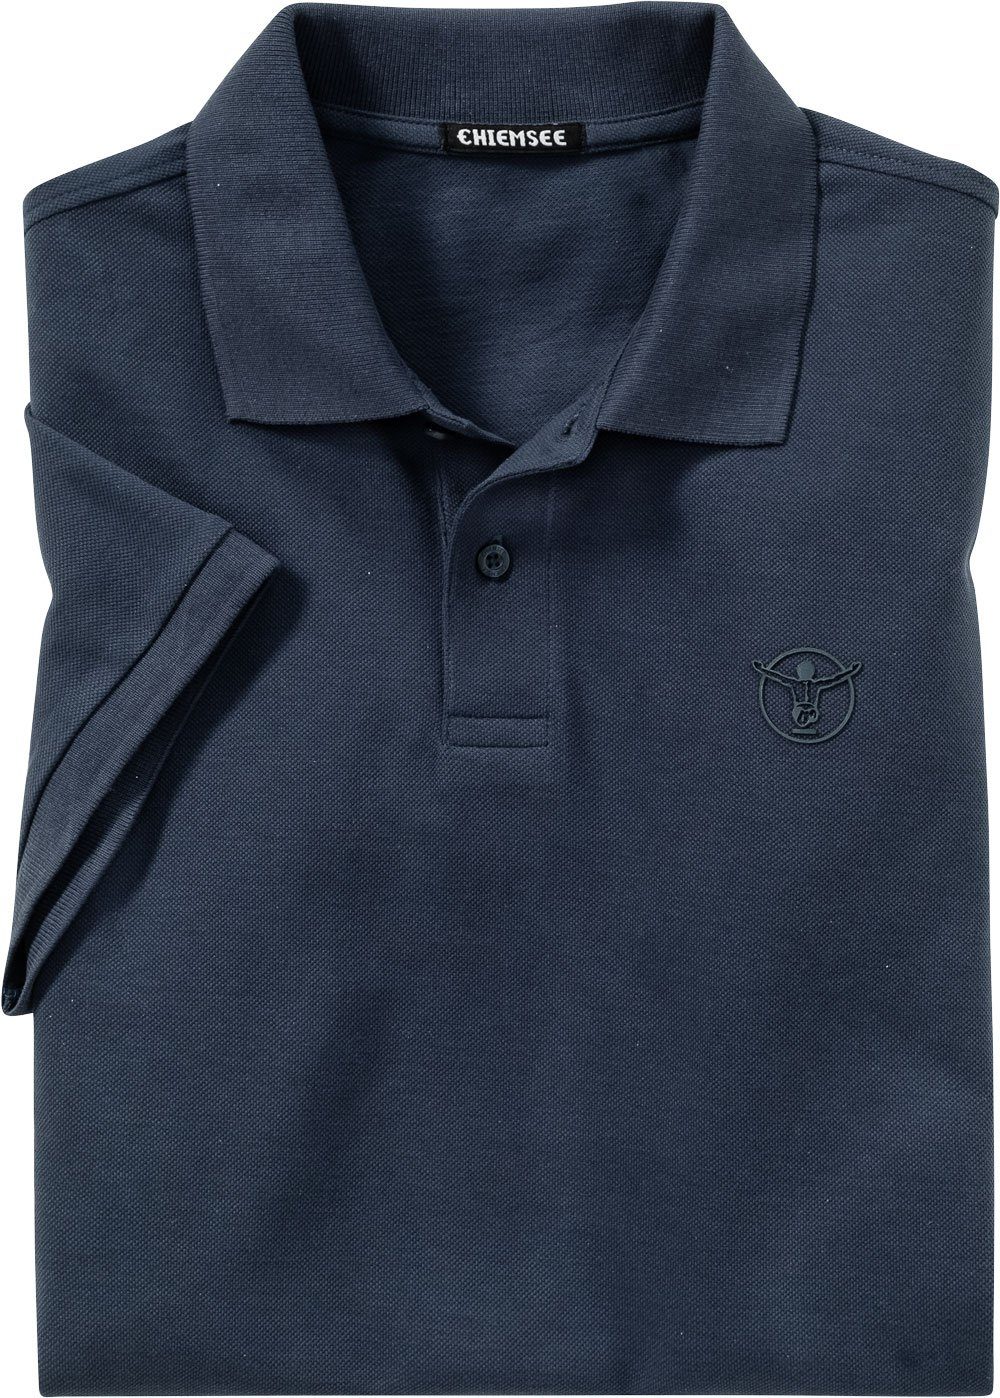 Chiemsee Poloshirt aus marine Baumwoll-Piqué reinem